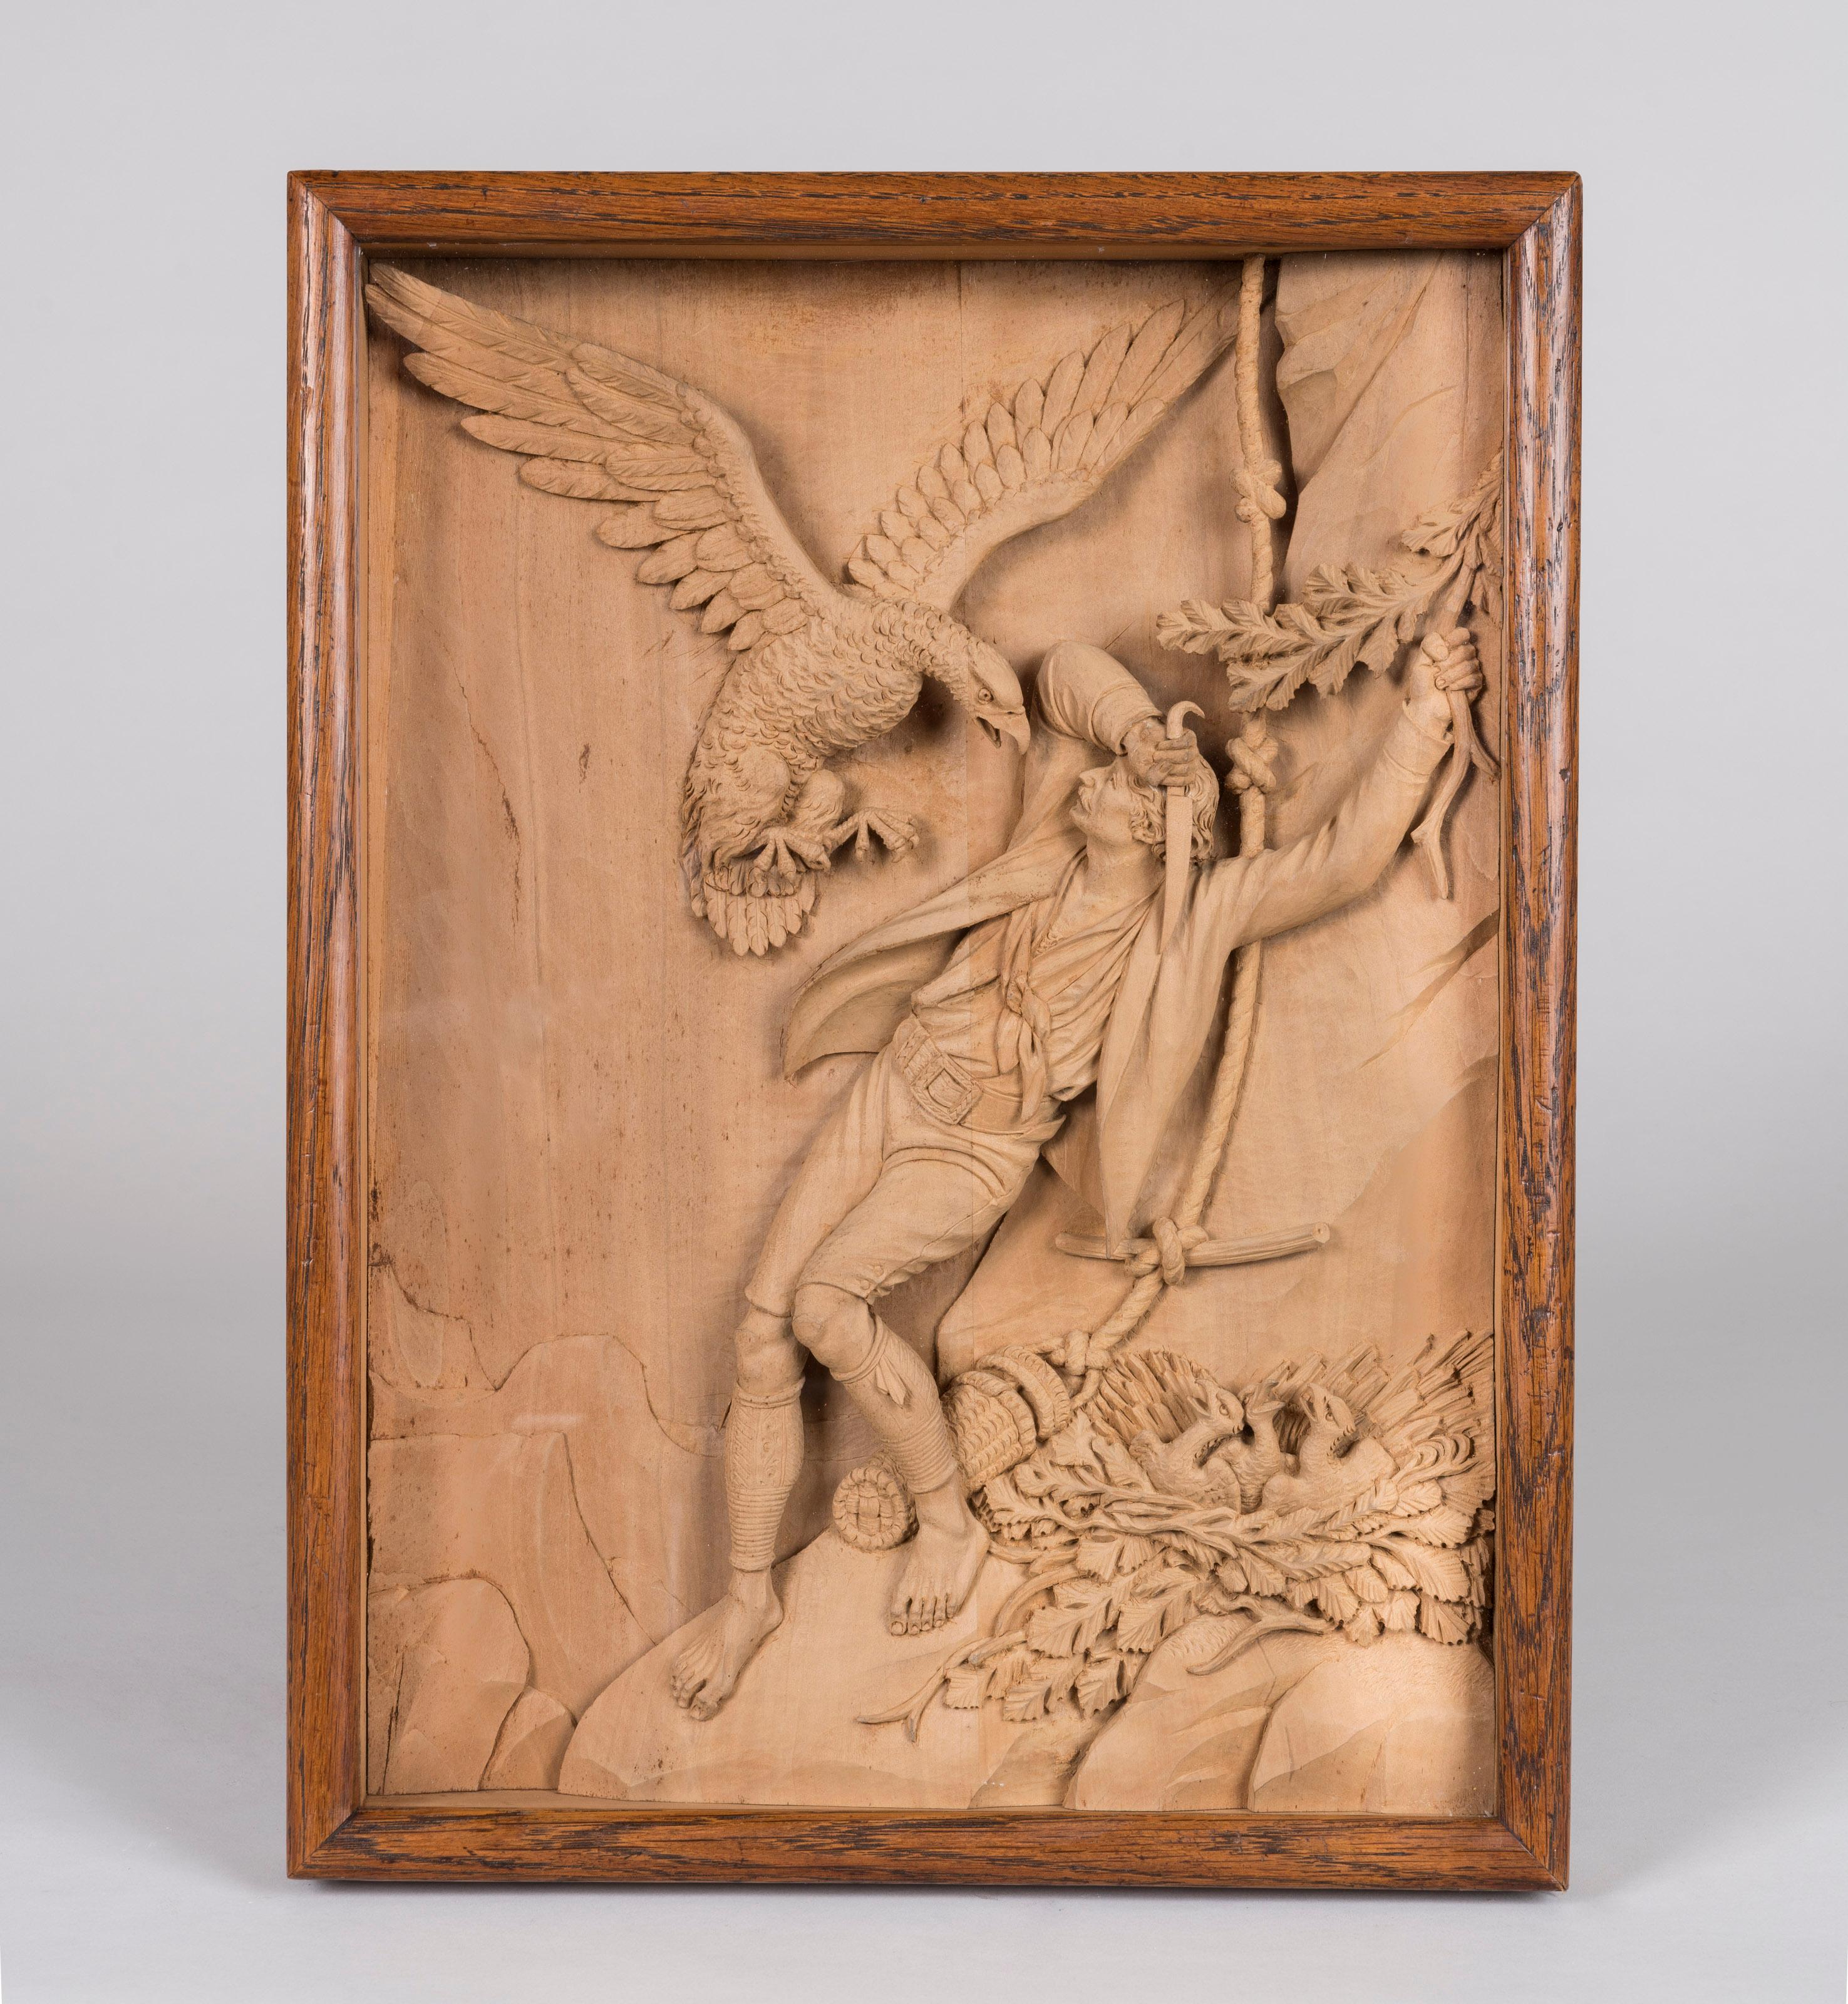 Ein Paar geschnitzte Schattenboxen aus Lindenholz

Fein geschnitzt im Hochrelief, mit zwei berühmten Szenen: ein Adler, der einen Mann angreift, und ein Wilderer, der erschossen wird, in einem rechteckigen Eichenrahmen. Mit dem Papieretikett des